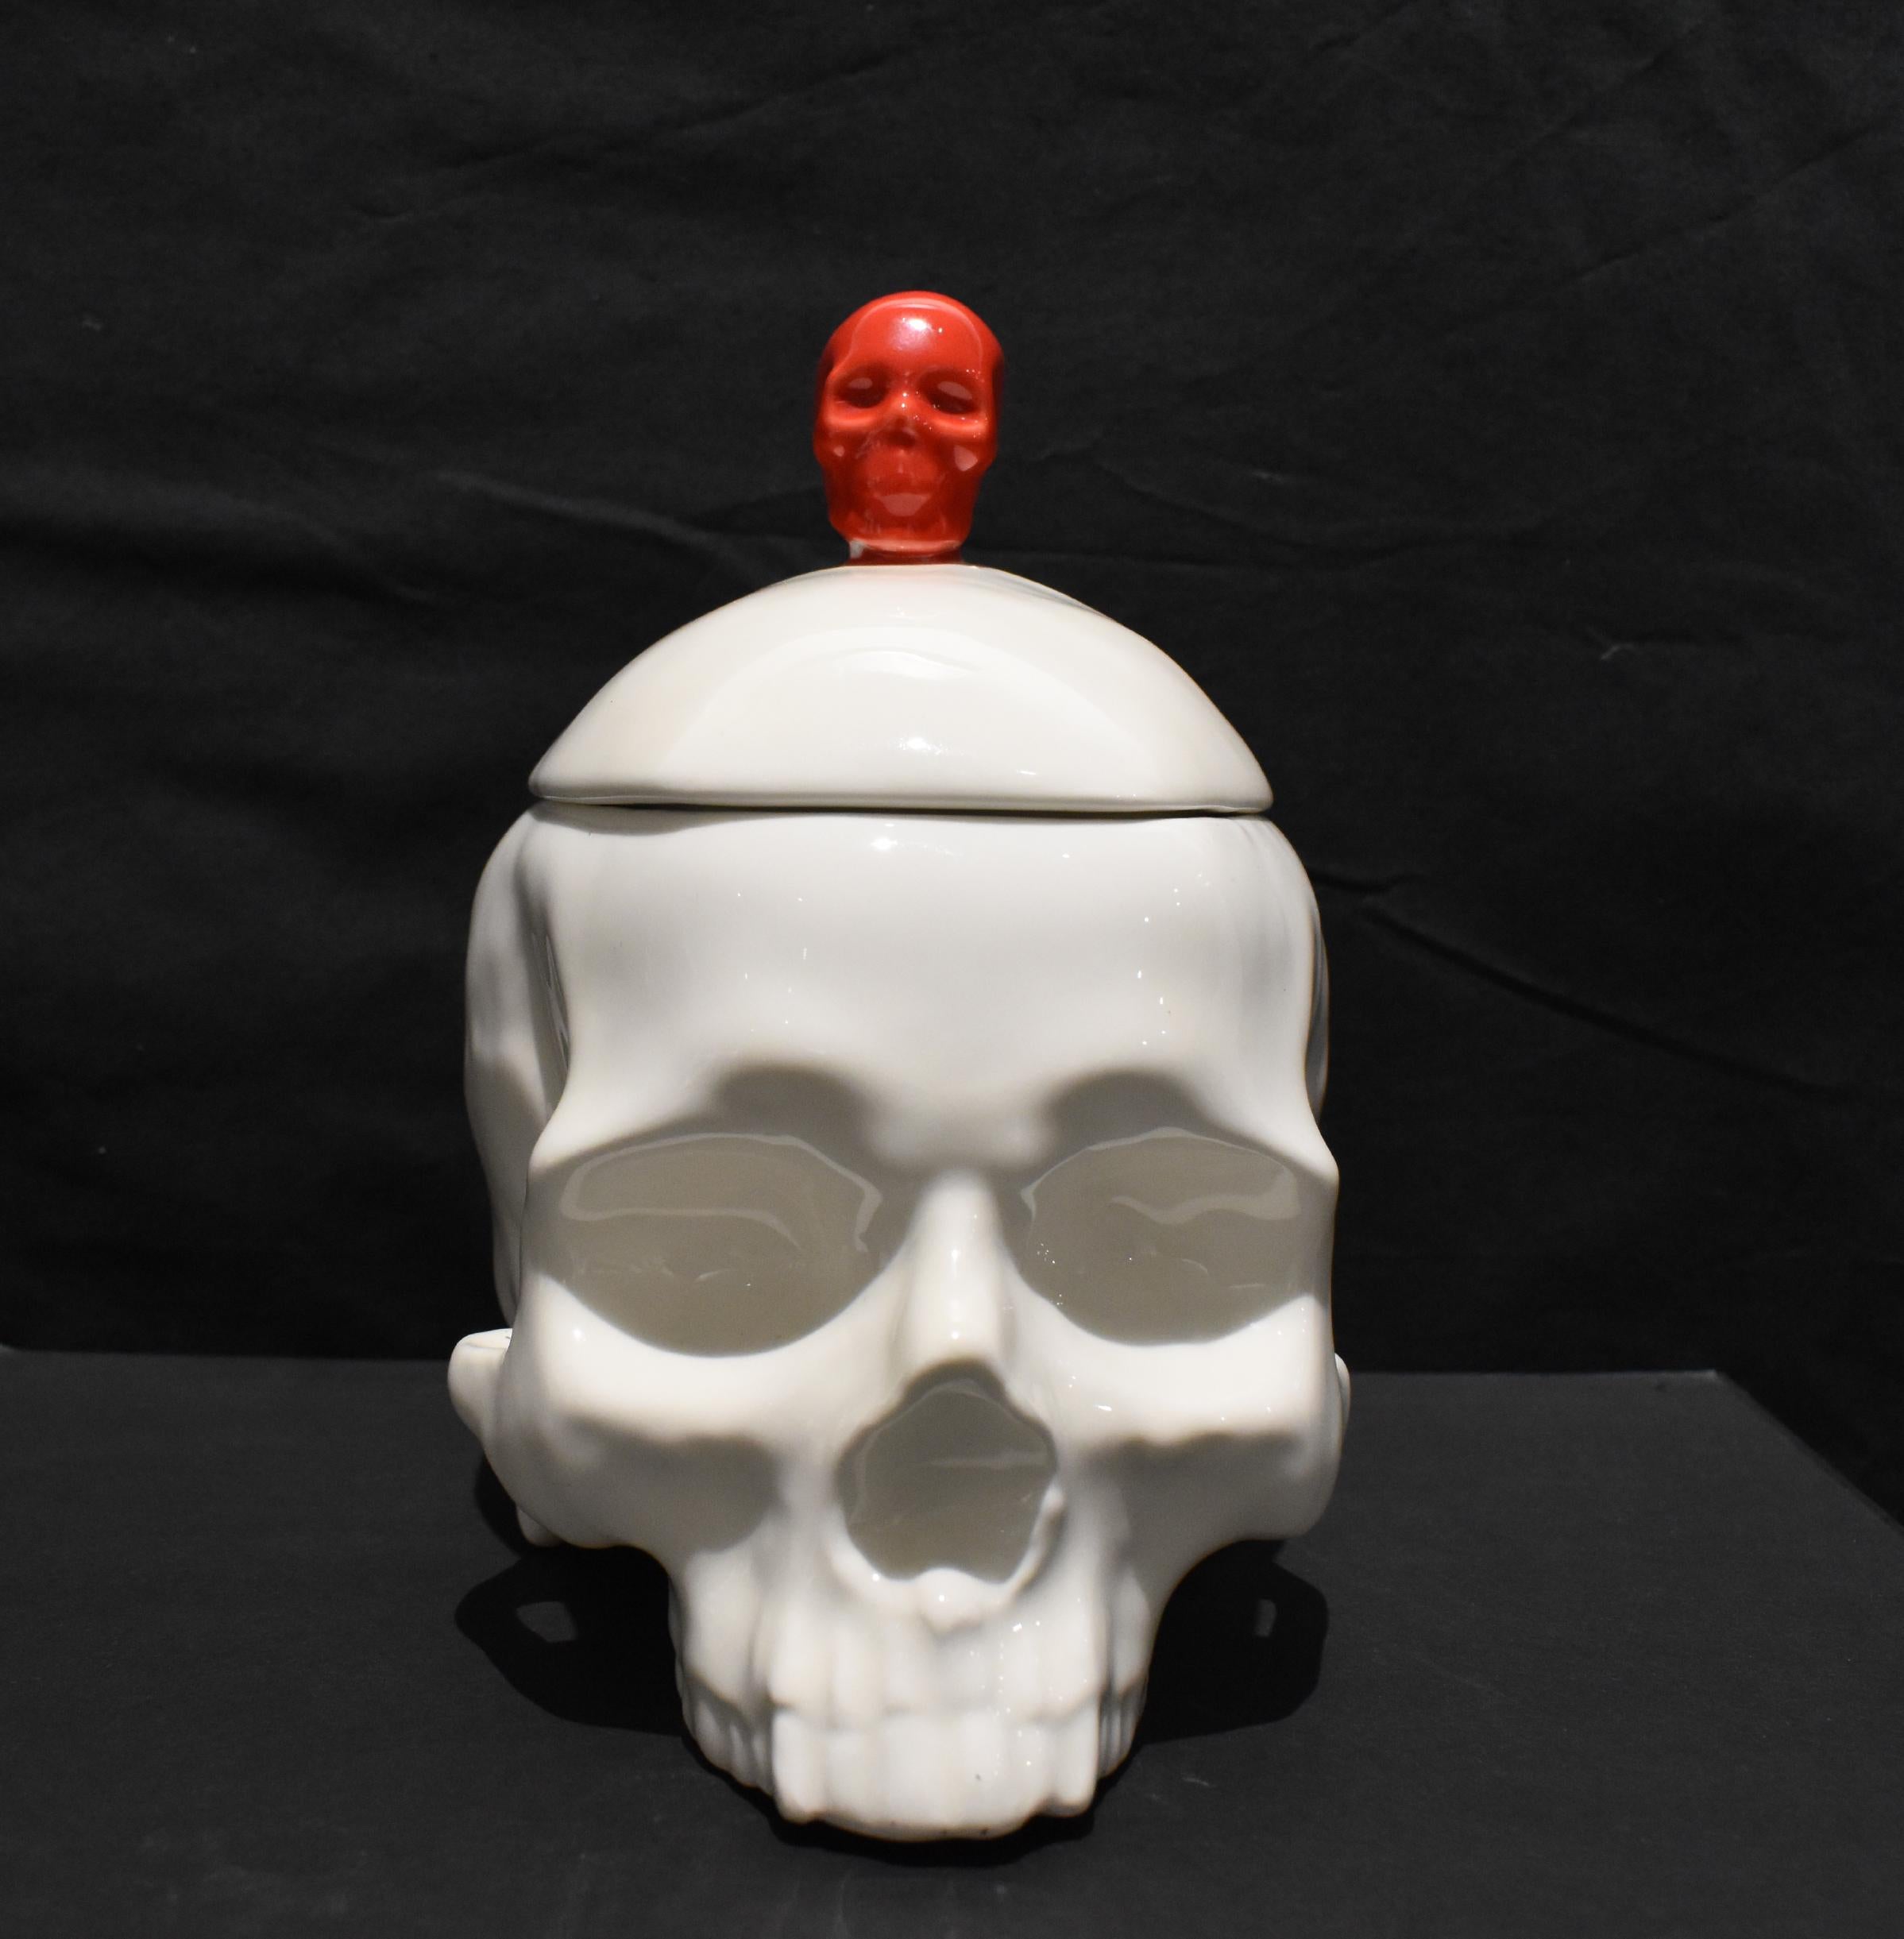 Skulptur mit Totenkopf aus Porzellan in Weiß und Rot, abnehmbarer Deckel, jetzt erhältlich (Pop-Art), Sculpture, von Huang Yulong